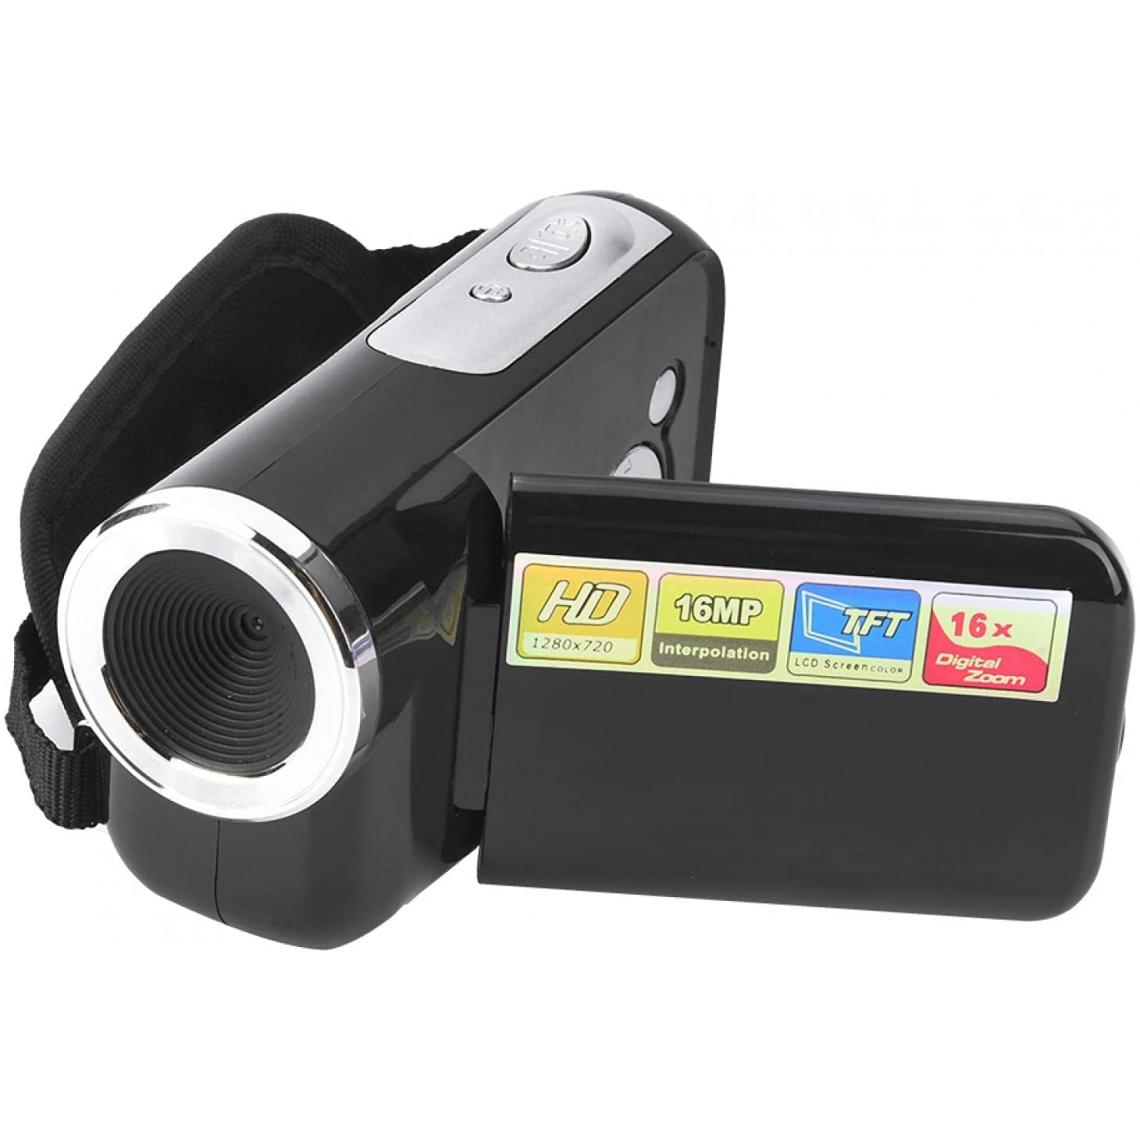 Vendos85 - Caméscope numérique TFT LCD de 2 pouces 1080 X 720 noir + 1 micro SD 32 go - Caméras Sportives